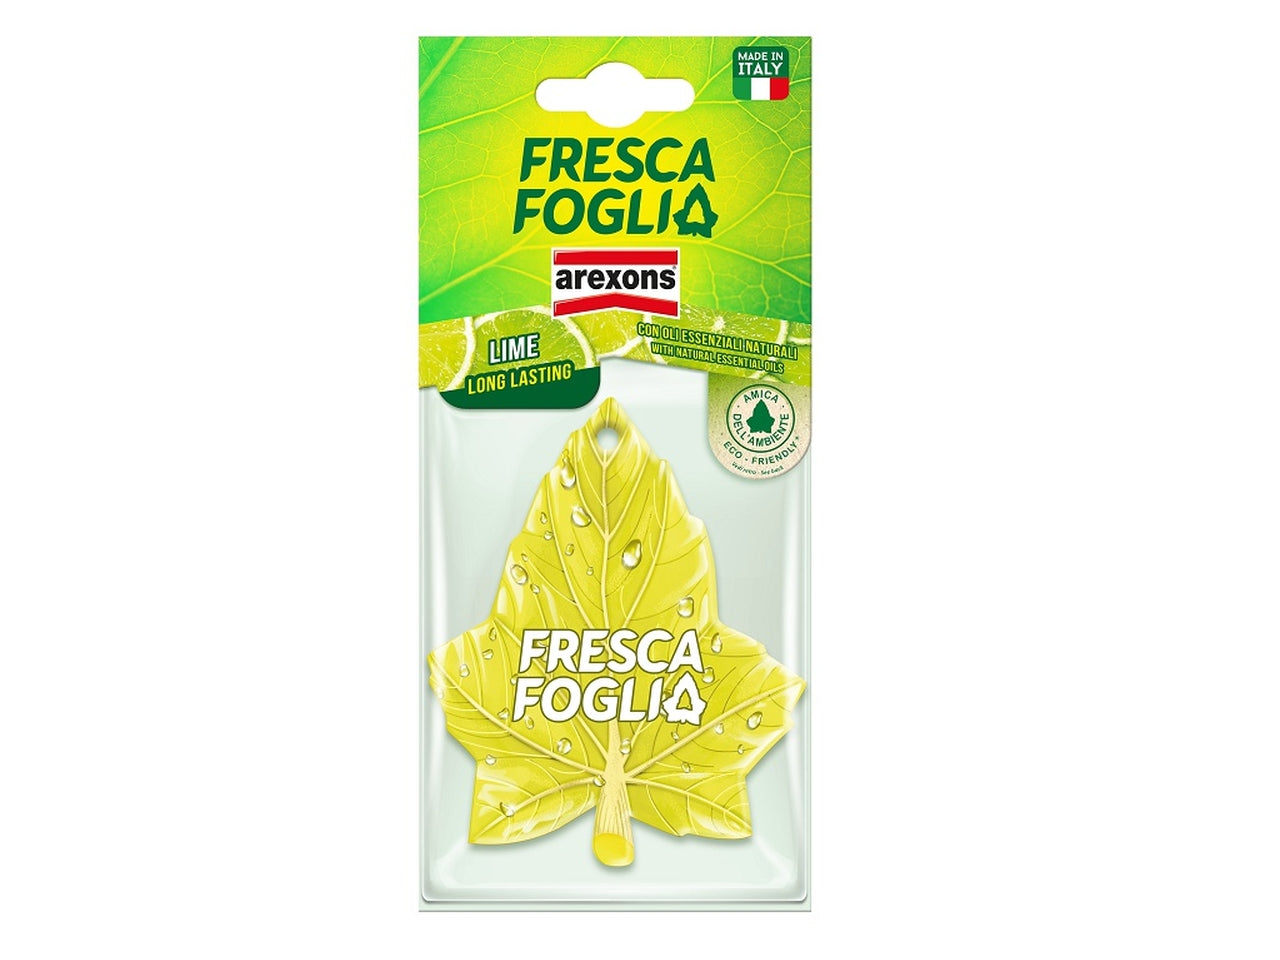 Deodorante fresca foglia lime long lasting con oli essenziali naturali